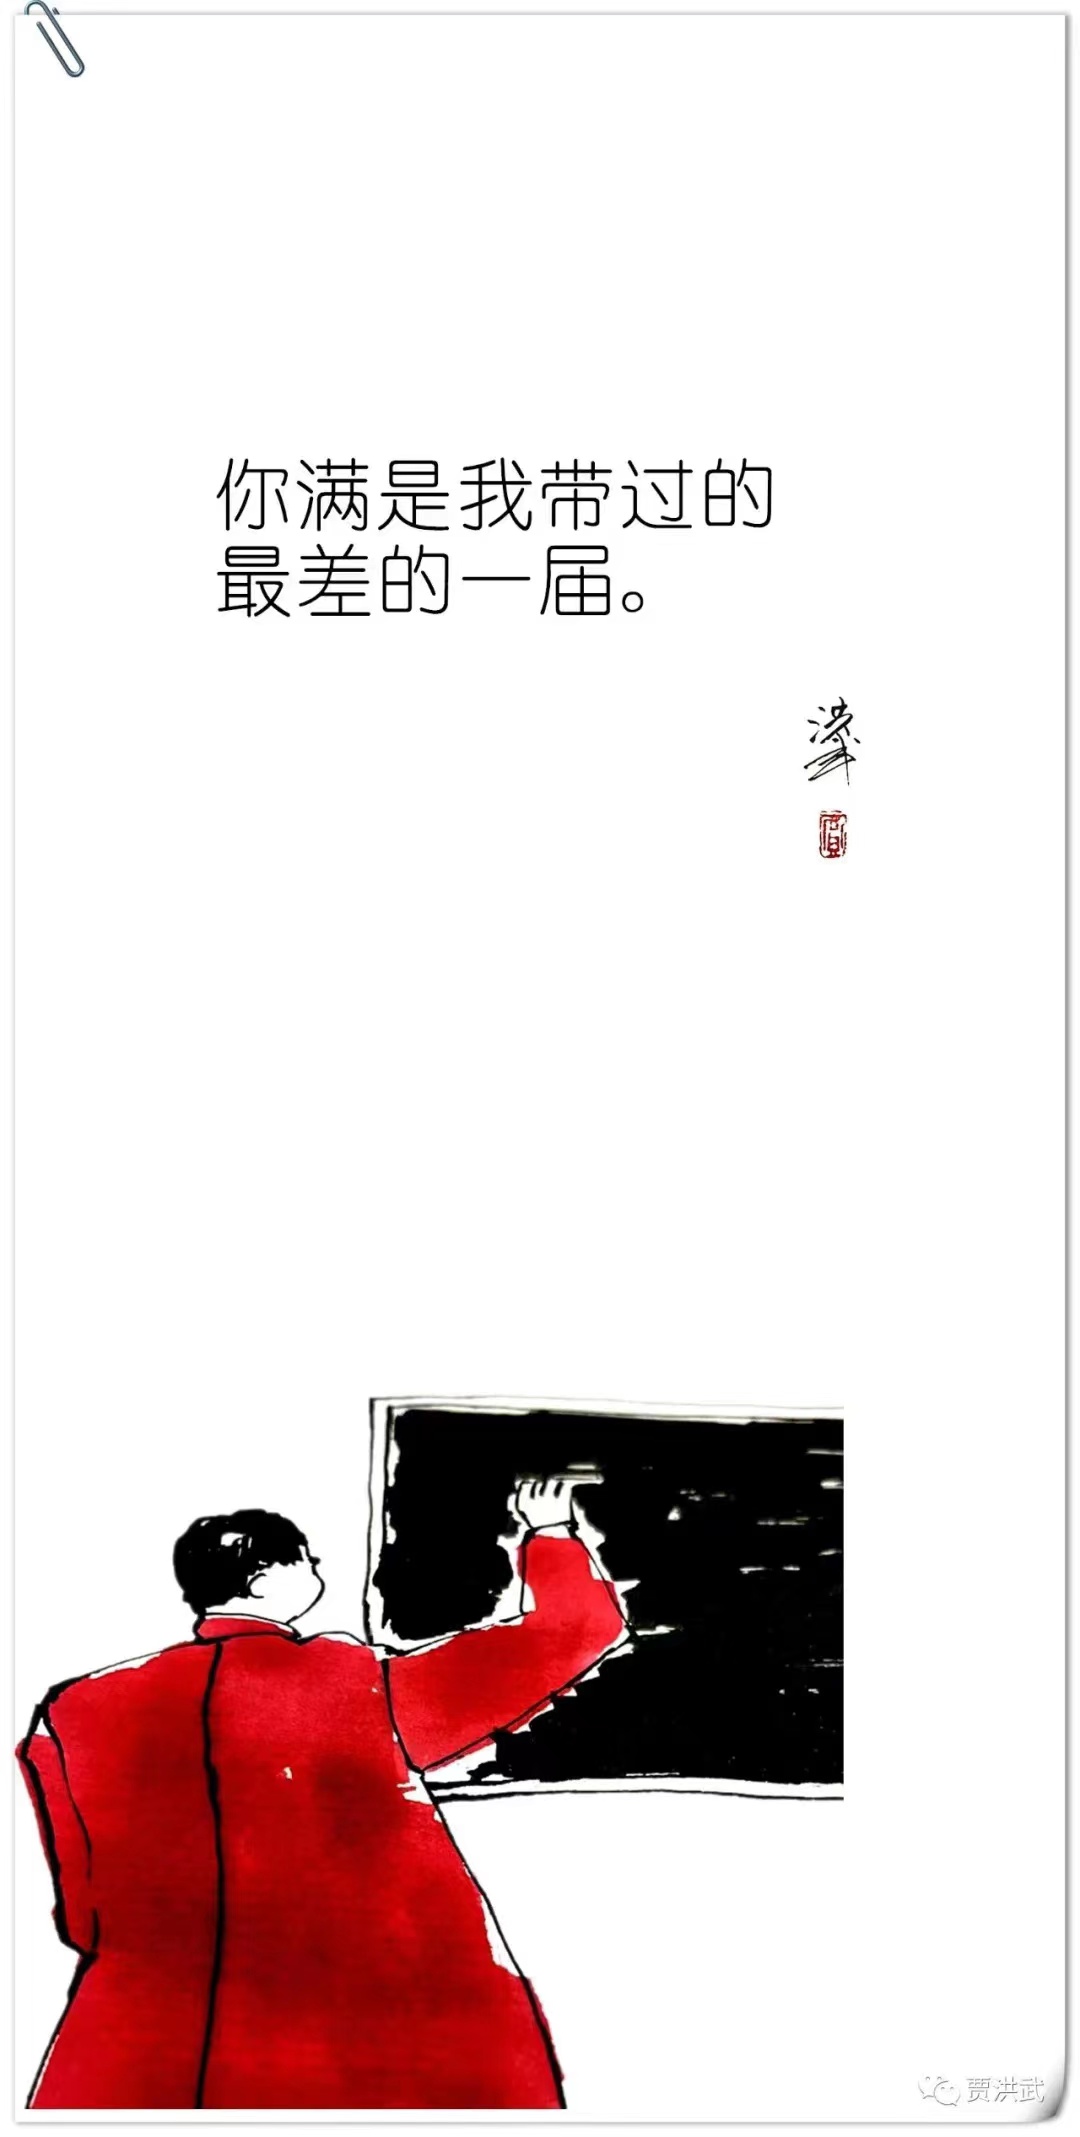 05-1-贾洪武  钢笔漫画《那些年老师说过的话》.jpg